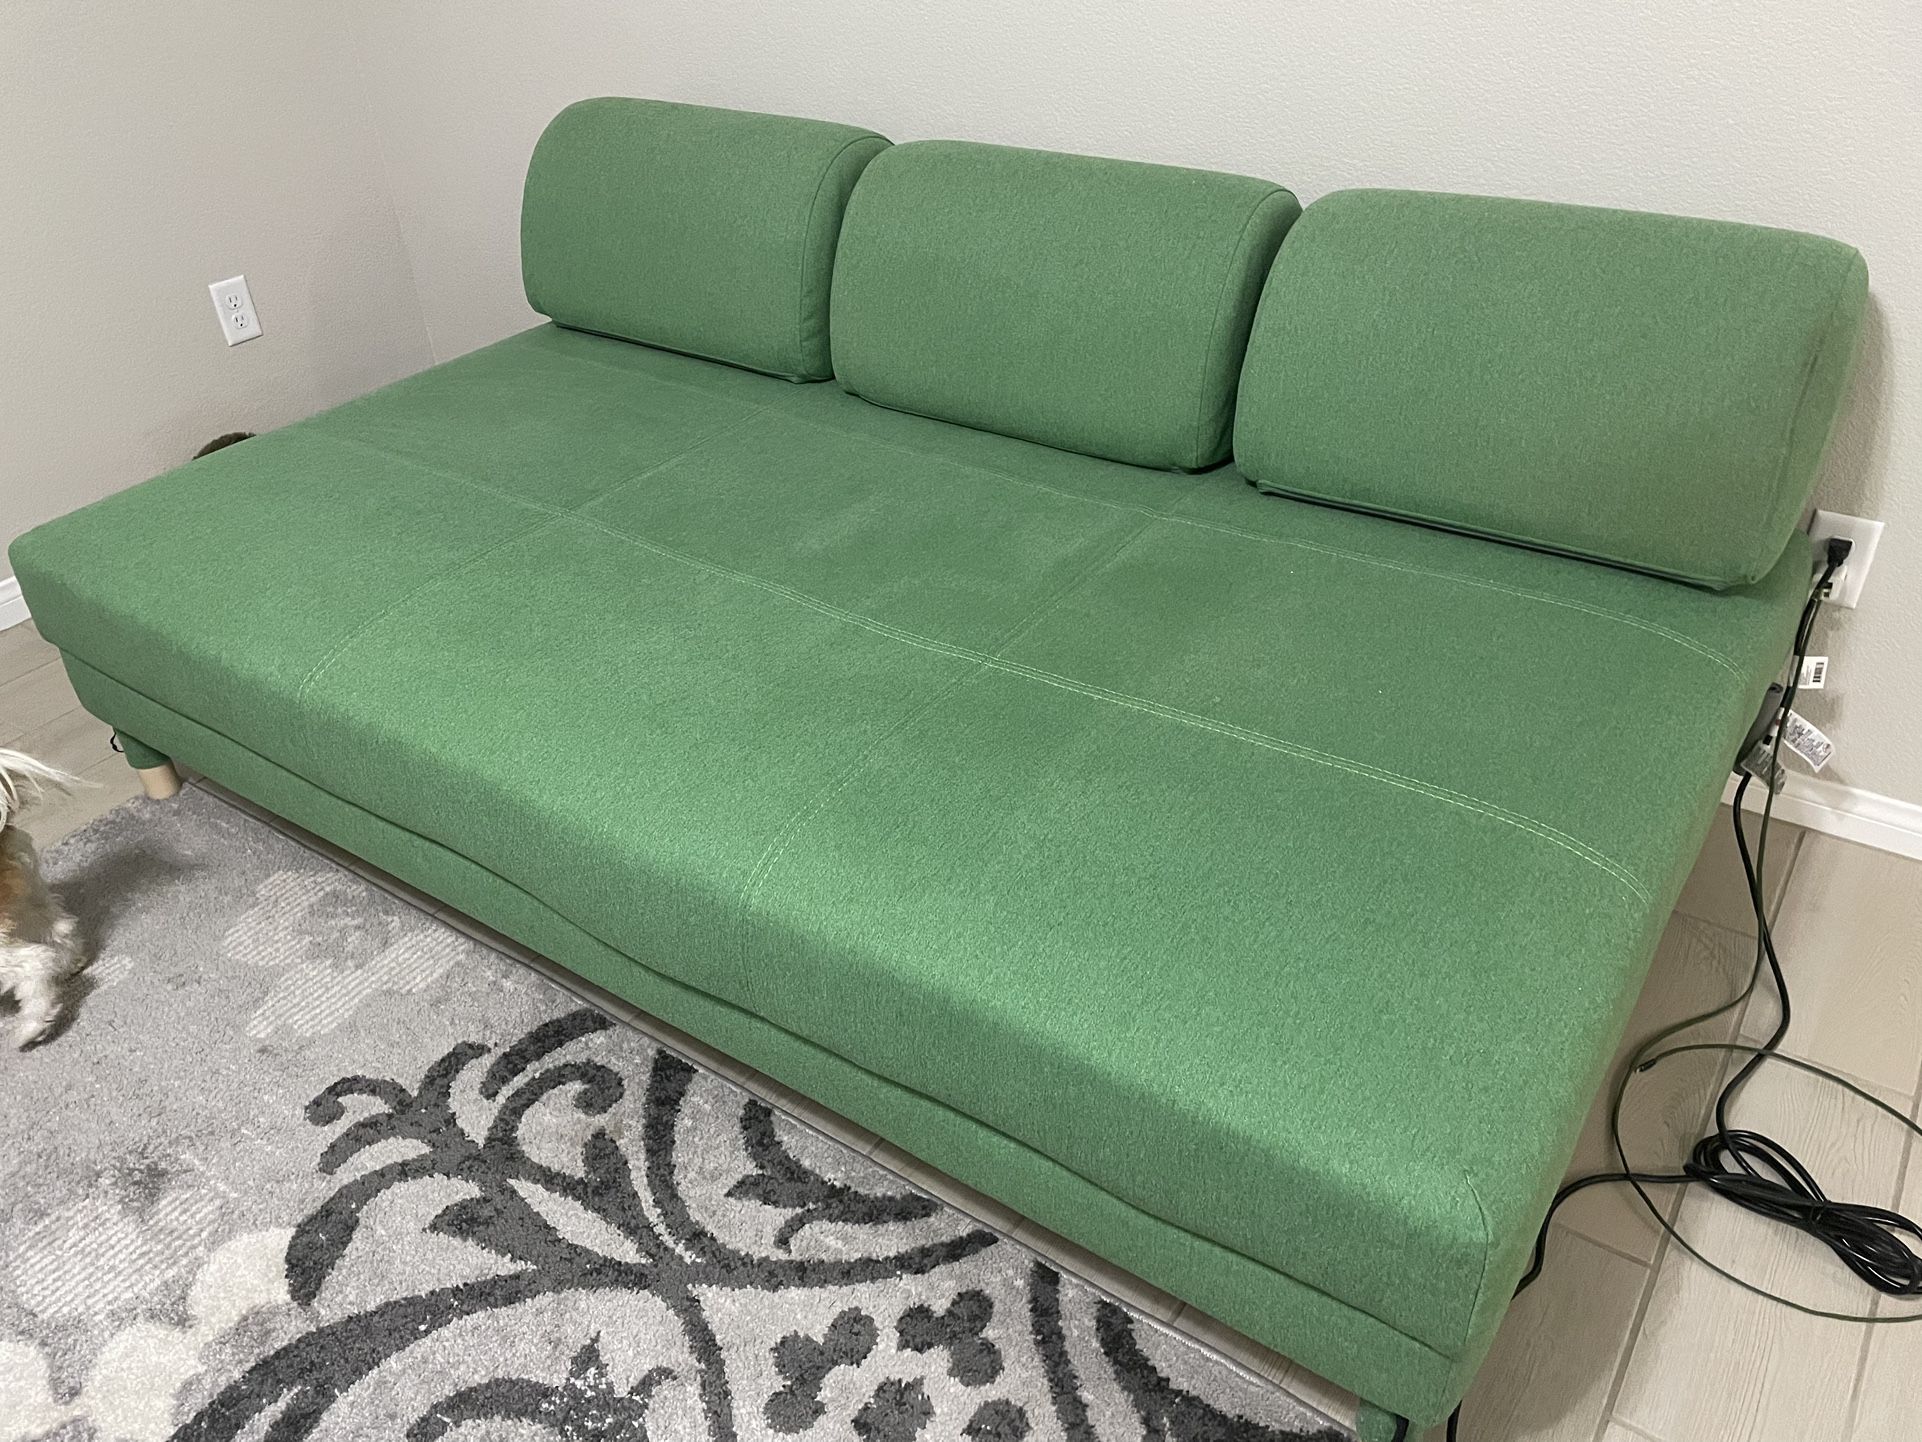 IKEA Sofa